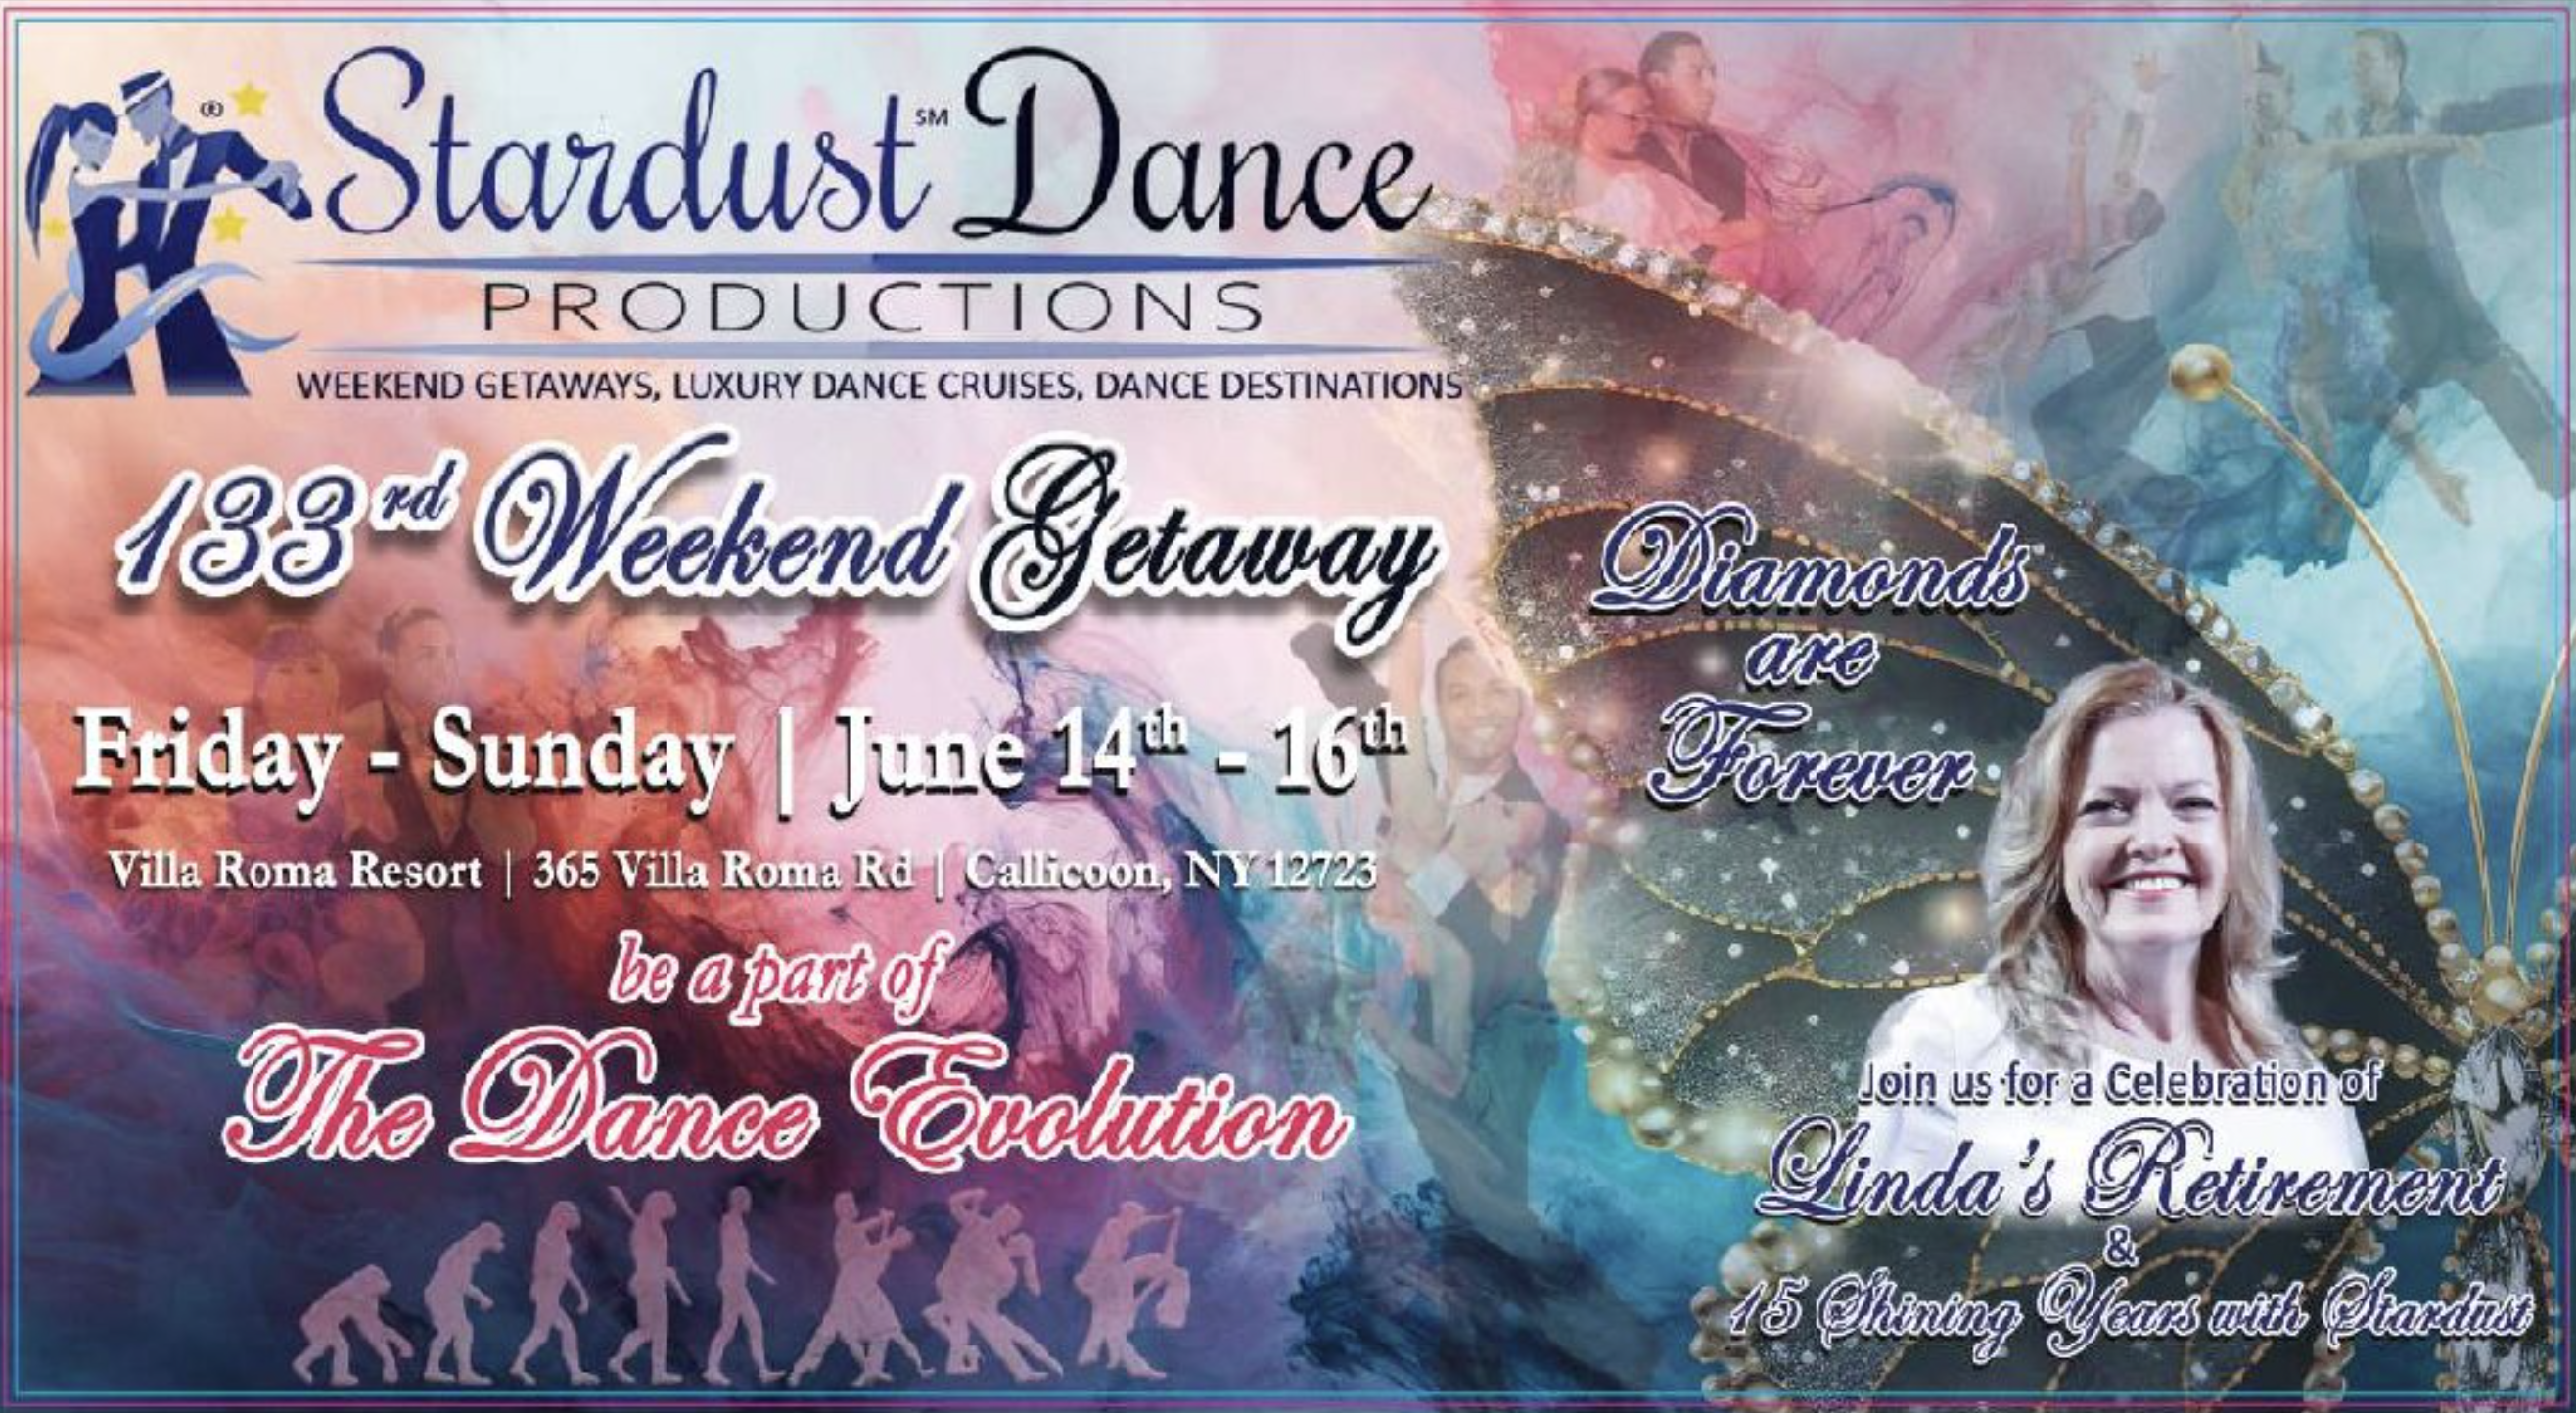 Stardust Dance Weekend